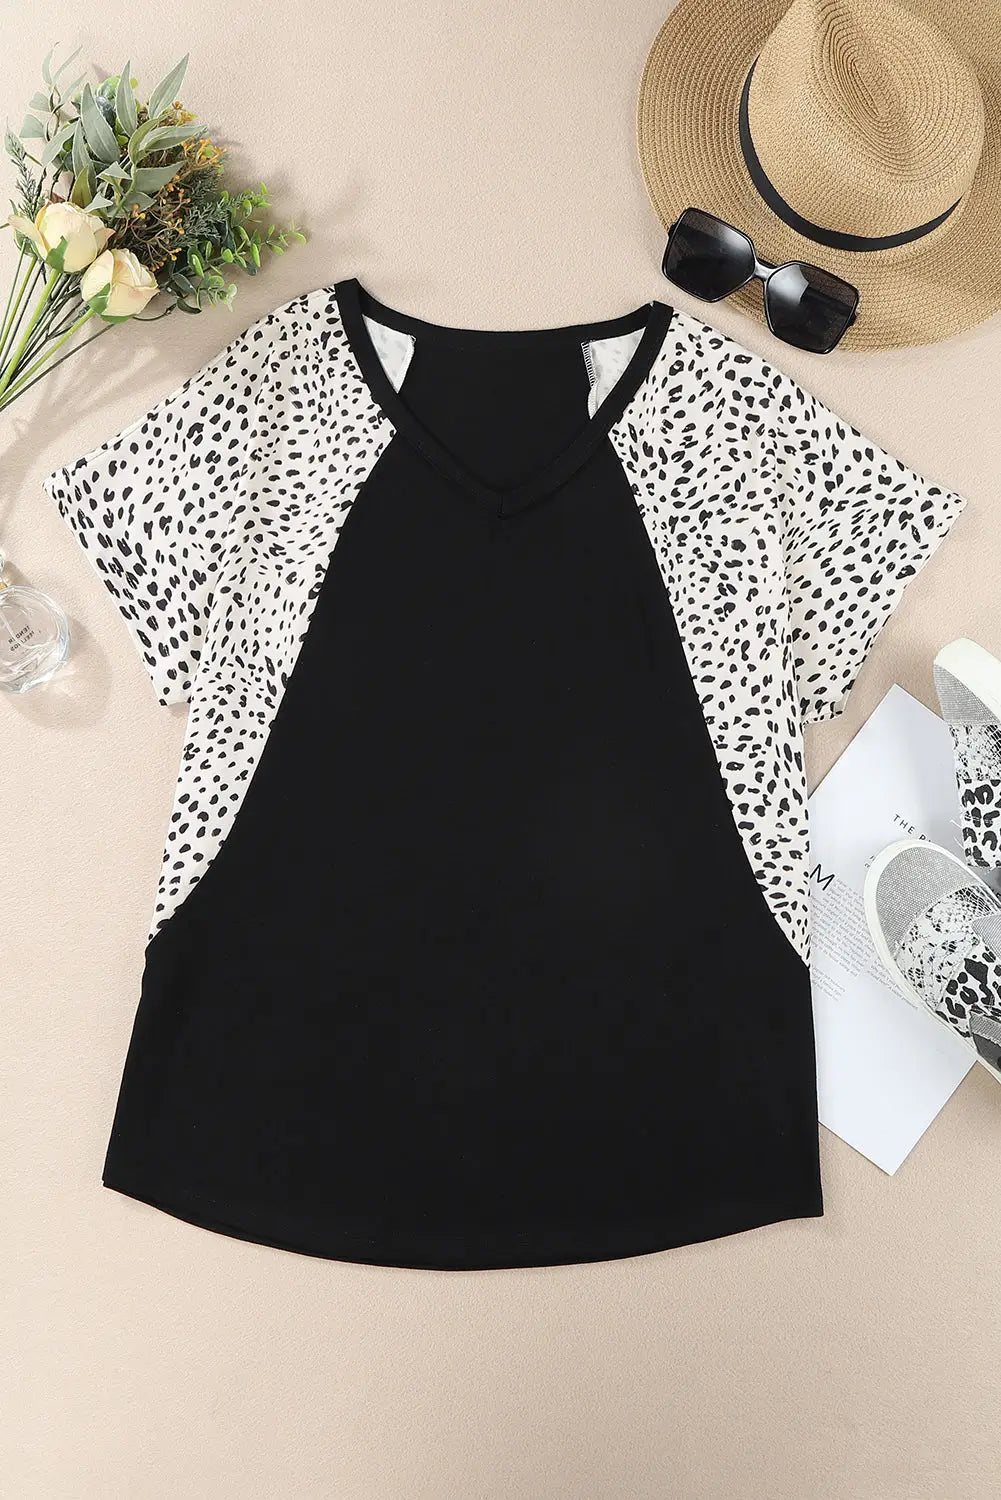 Black leopard sleeves color block v neck t-shirt - tops